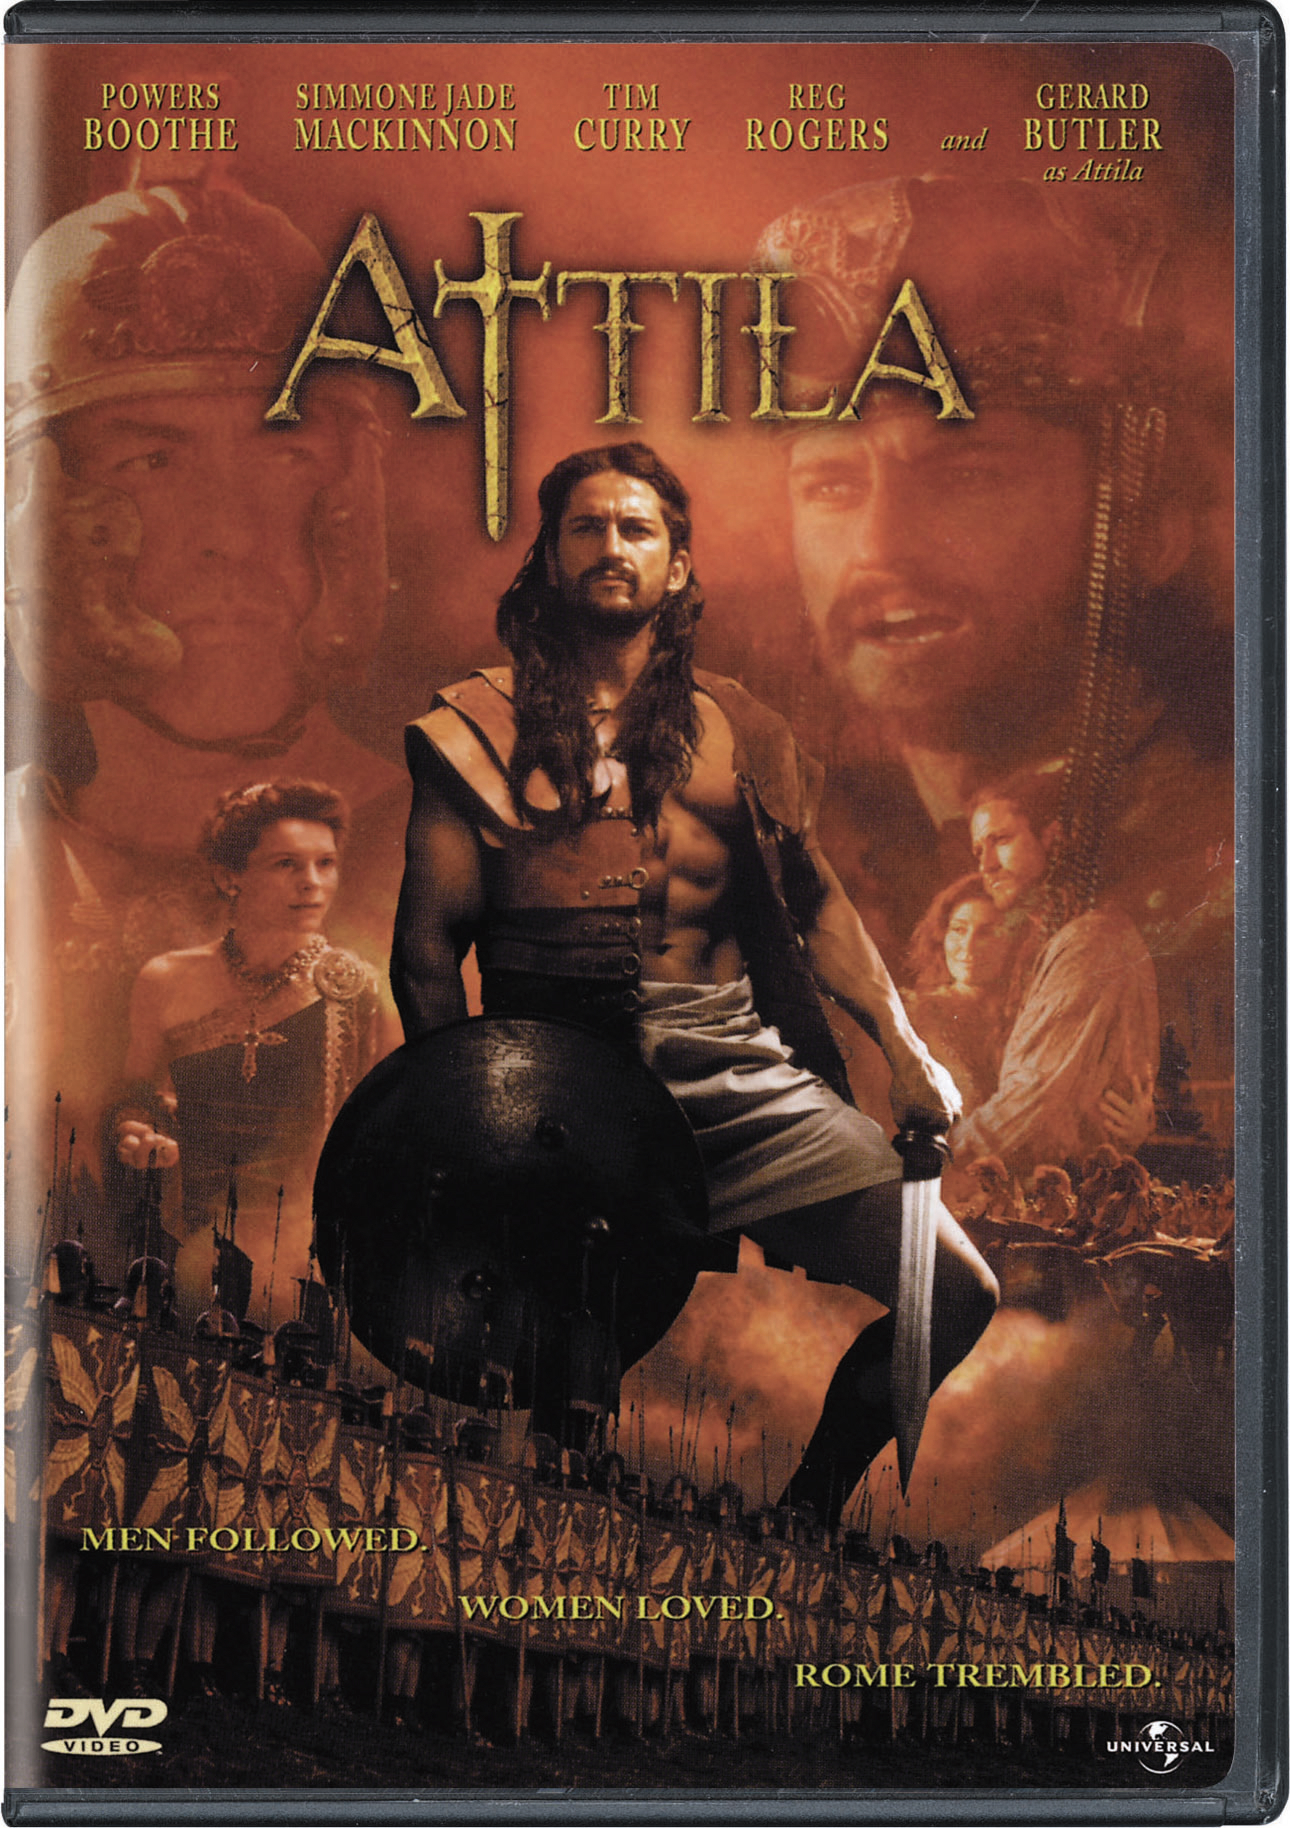 Attila - DVD [ 2000 ]  - Adventure Movies On DVD - Movies On GRUV